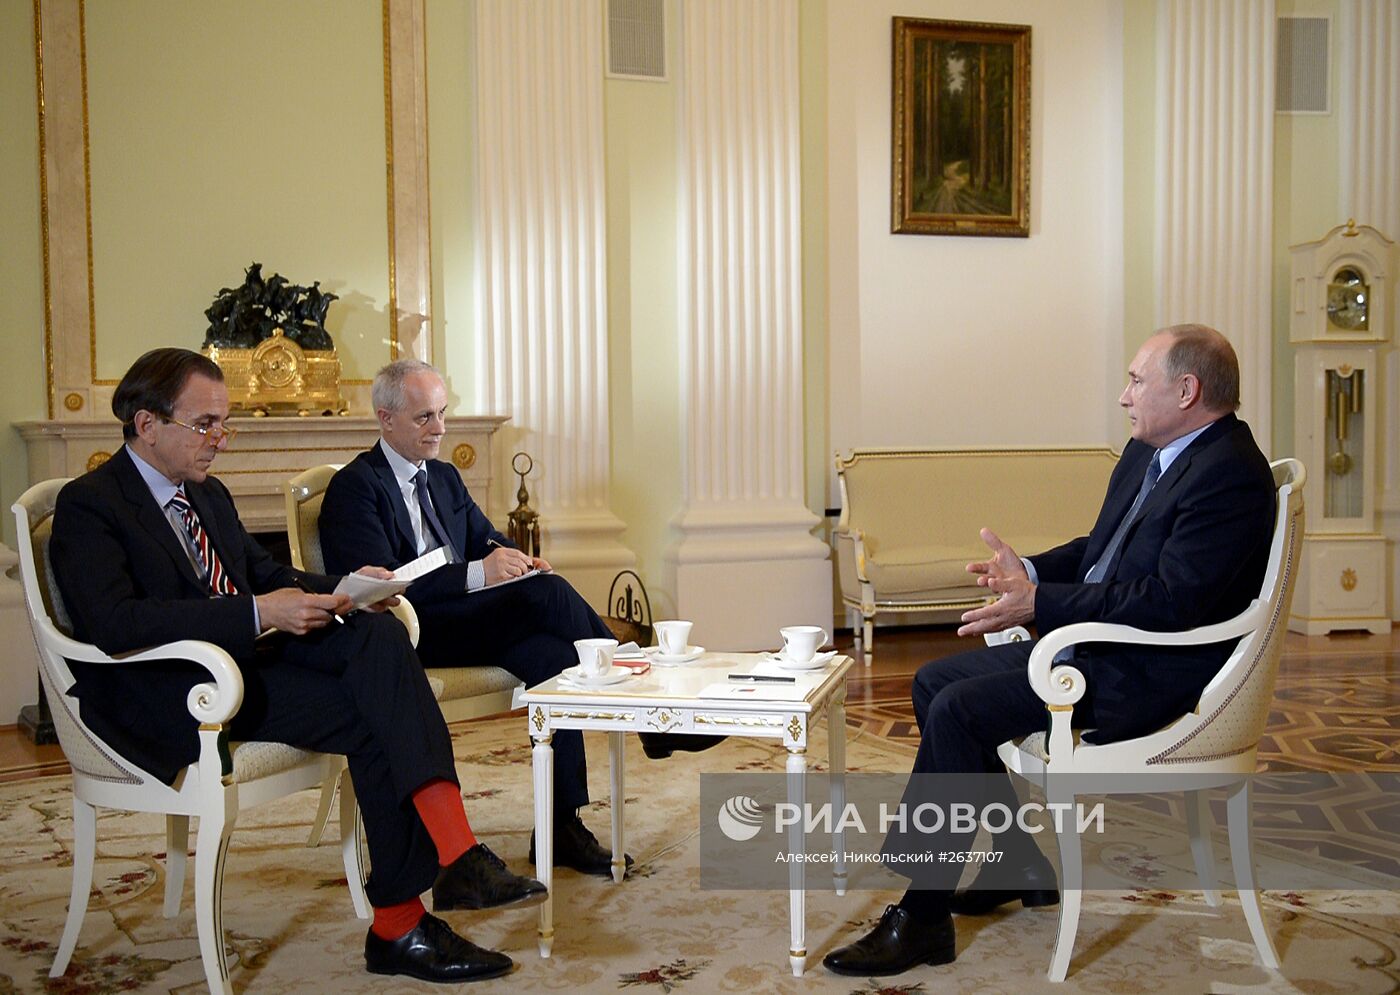 В преддверии визита в Италию президент РФ В.Путин дал интервью газете "Il Corriere della Sera"